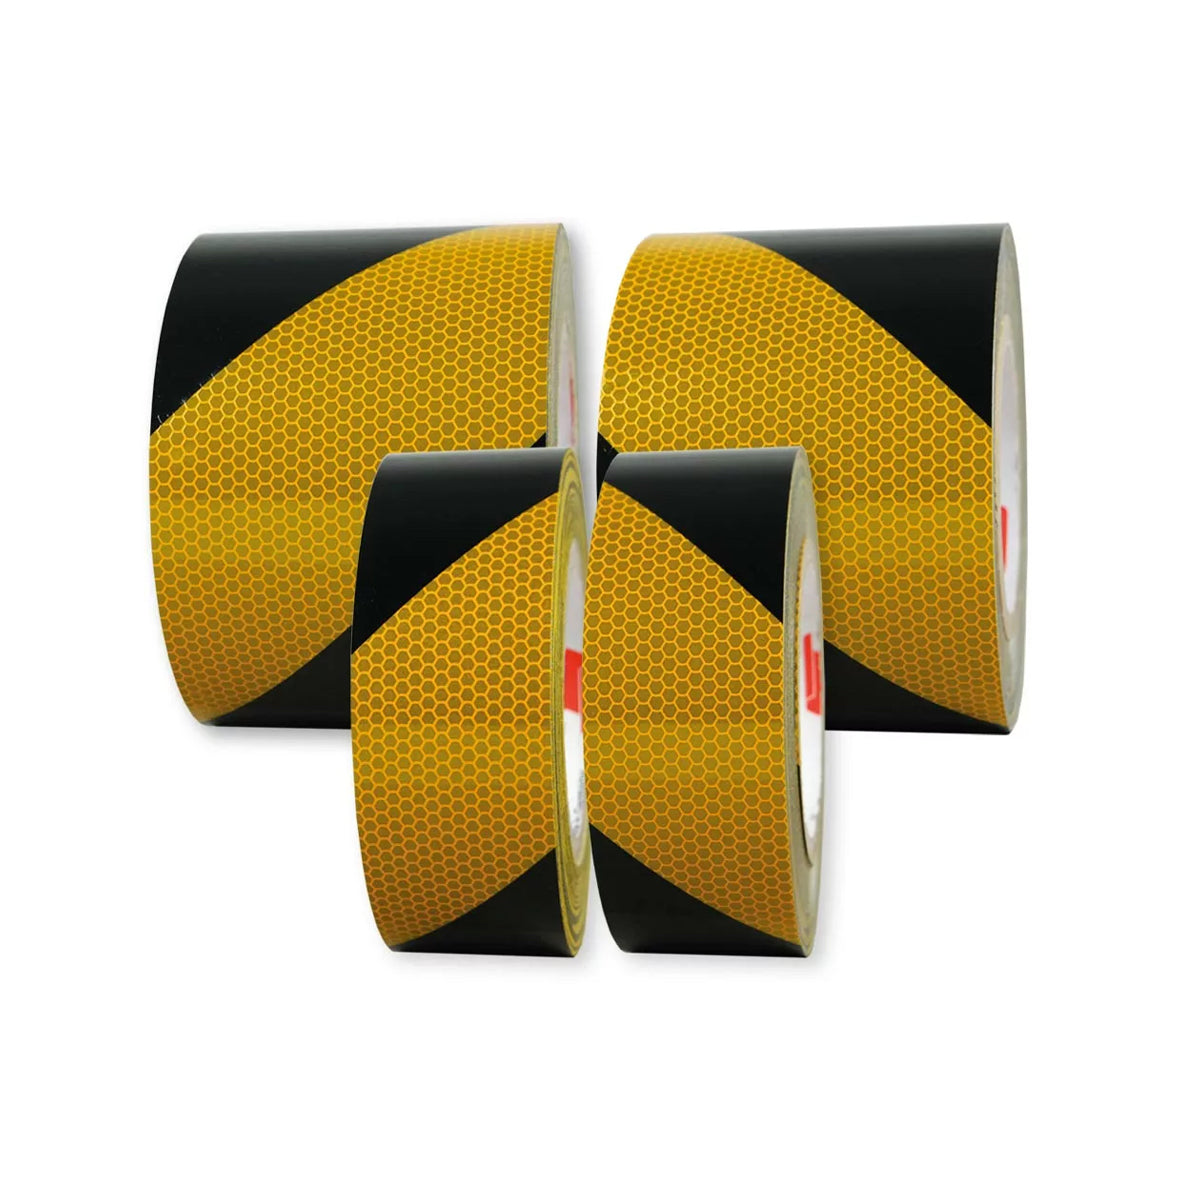 Warnmarkierungsband R2, für Fahrzeuge, R2, gelb-schwarz, 25 m x 50 mm, linksweisend